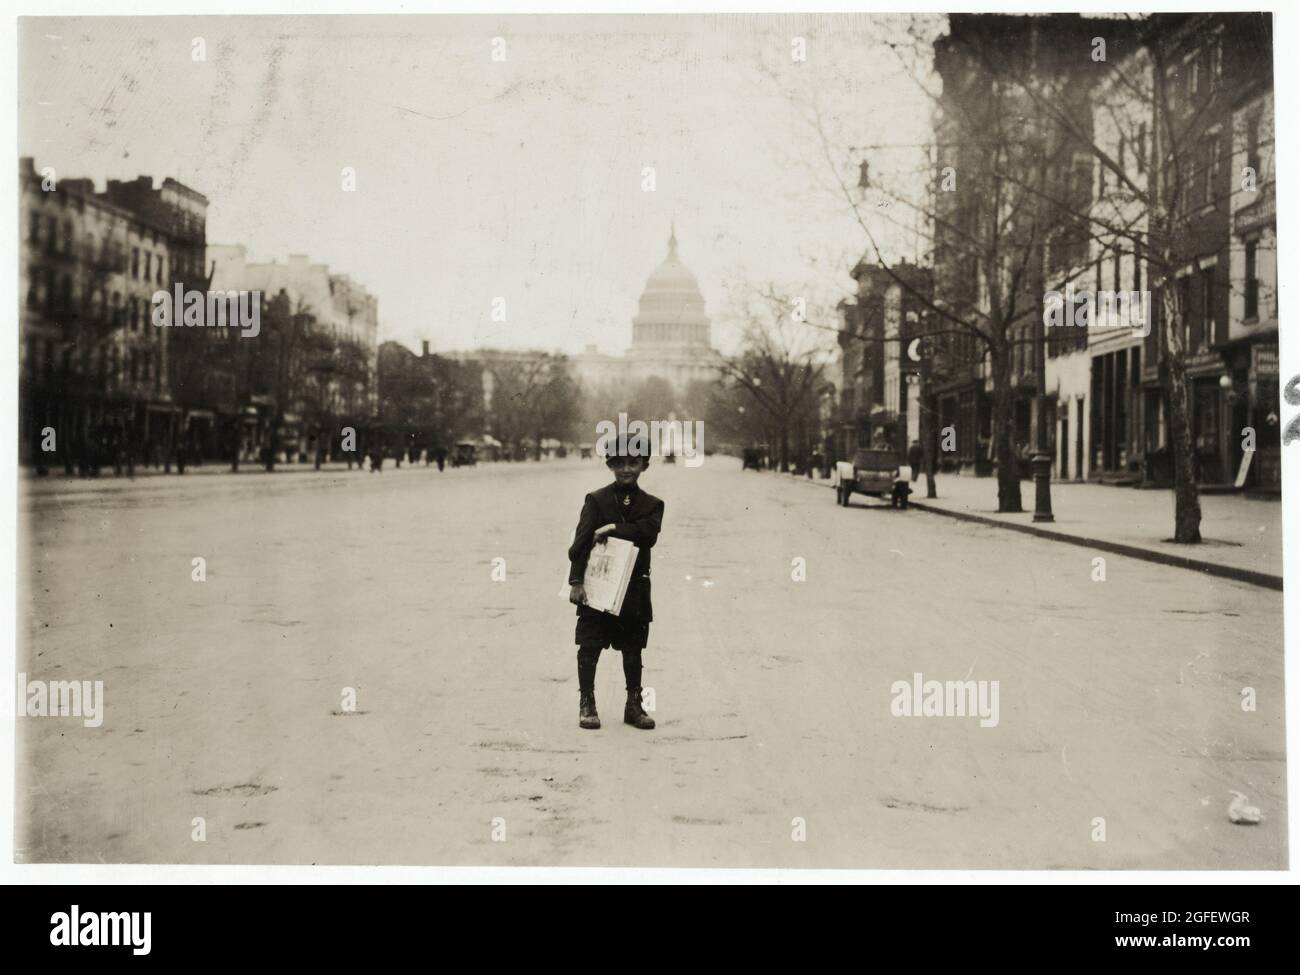 Sonntag. 7 Jahre alter Nachrichtenbub – 1912. April – Foto von Lewis Hine. Kapitol der Vereinigten Staaten im Hintergrund / Washington DC. Stockfoto